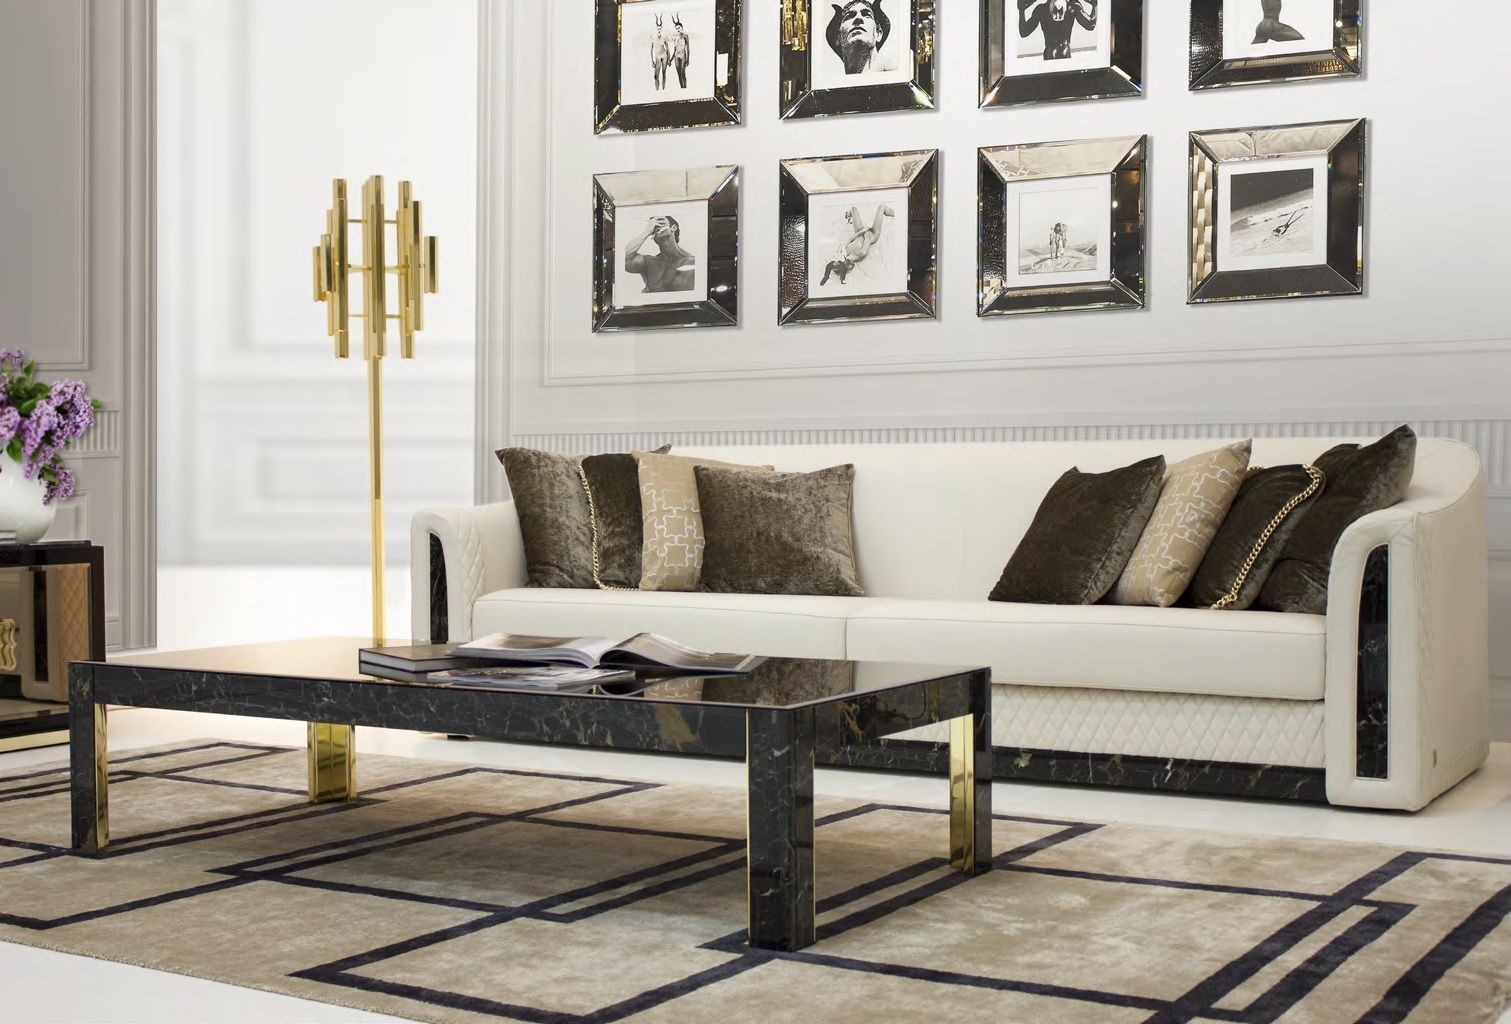 Диван - fmi/784. Белый кожаный диван с черными мраморными вставками отфабрики Formitalia